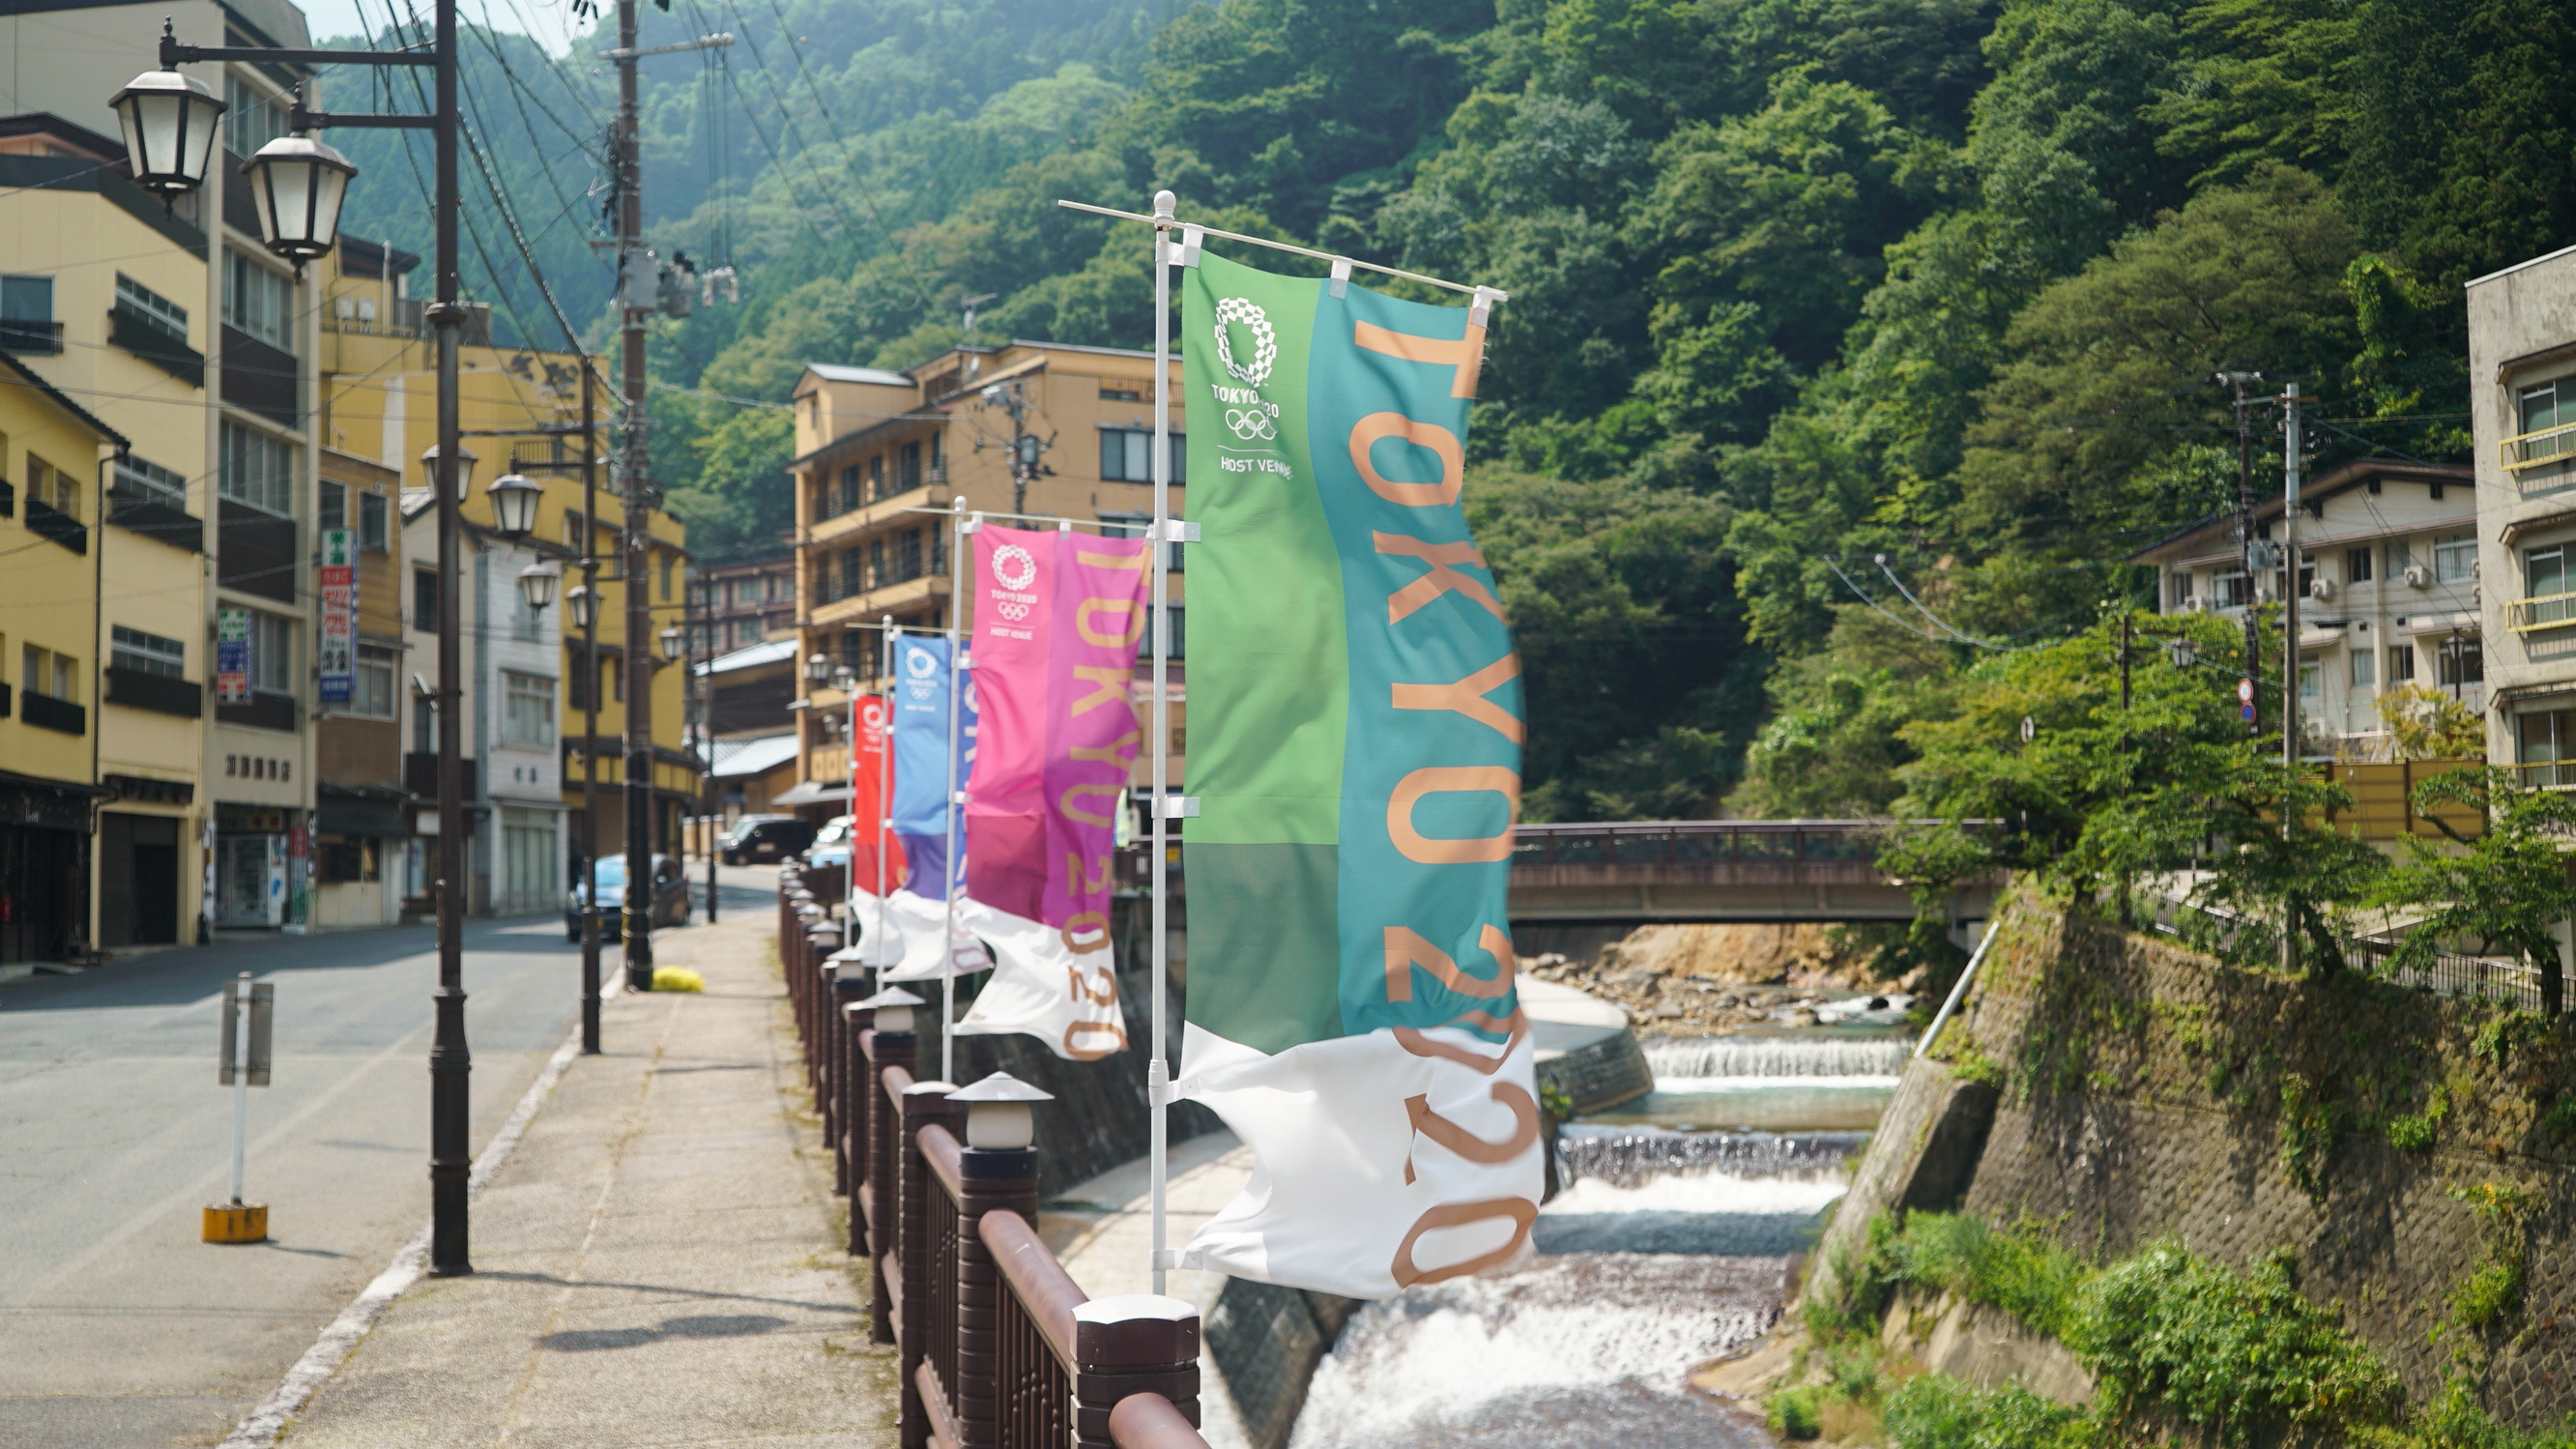 Tokyo 2020 banners flutter along a riverwalk in Tsuchiyu Onsen Machi